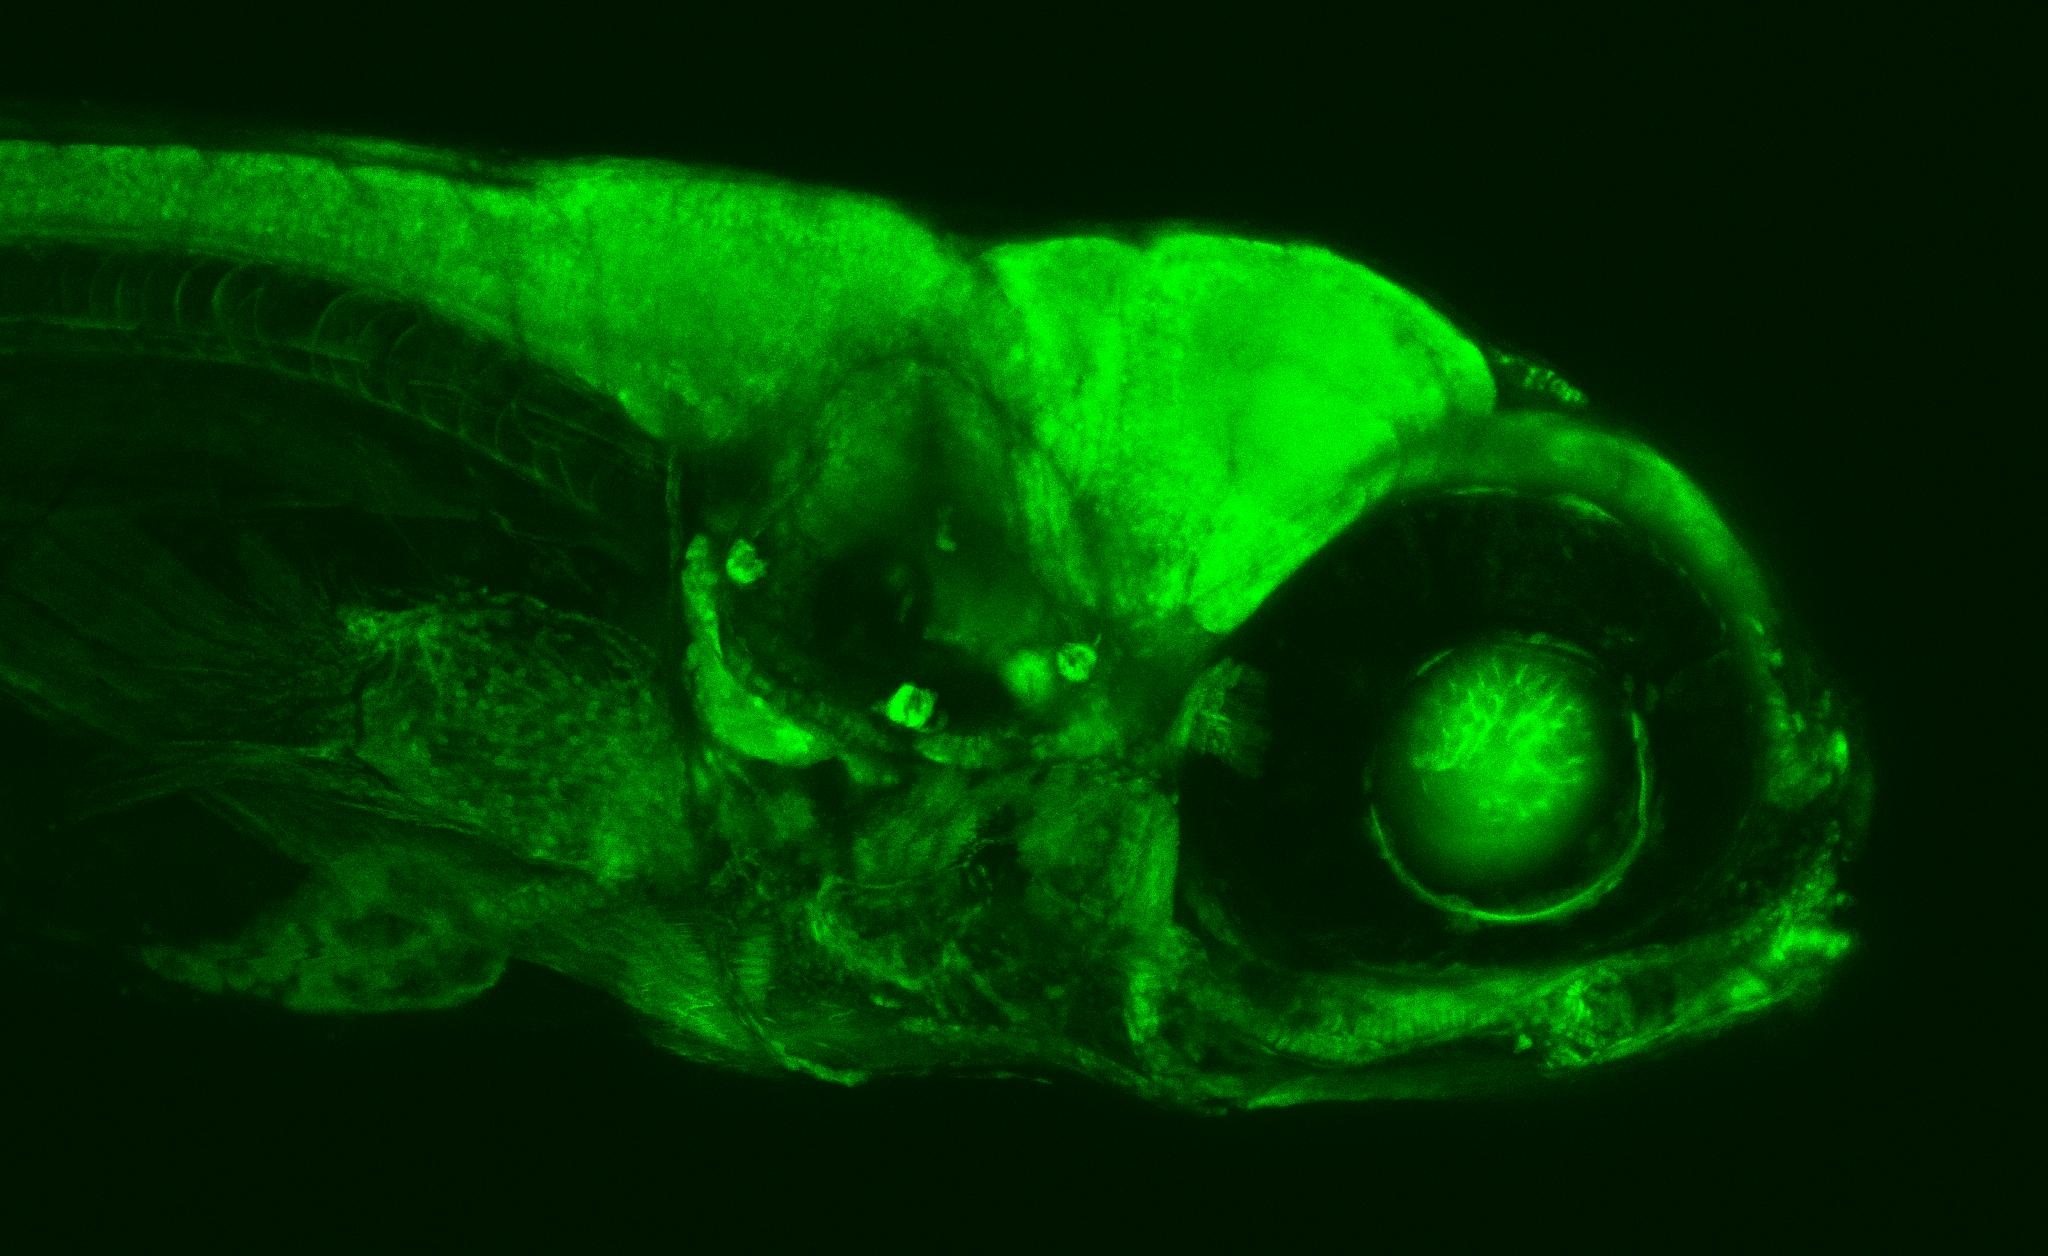 zu sehen ist ein grün leuchtender Fisch in einem Mikroskop, von der Seite.